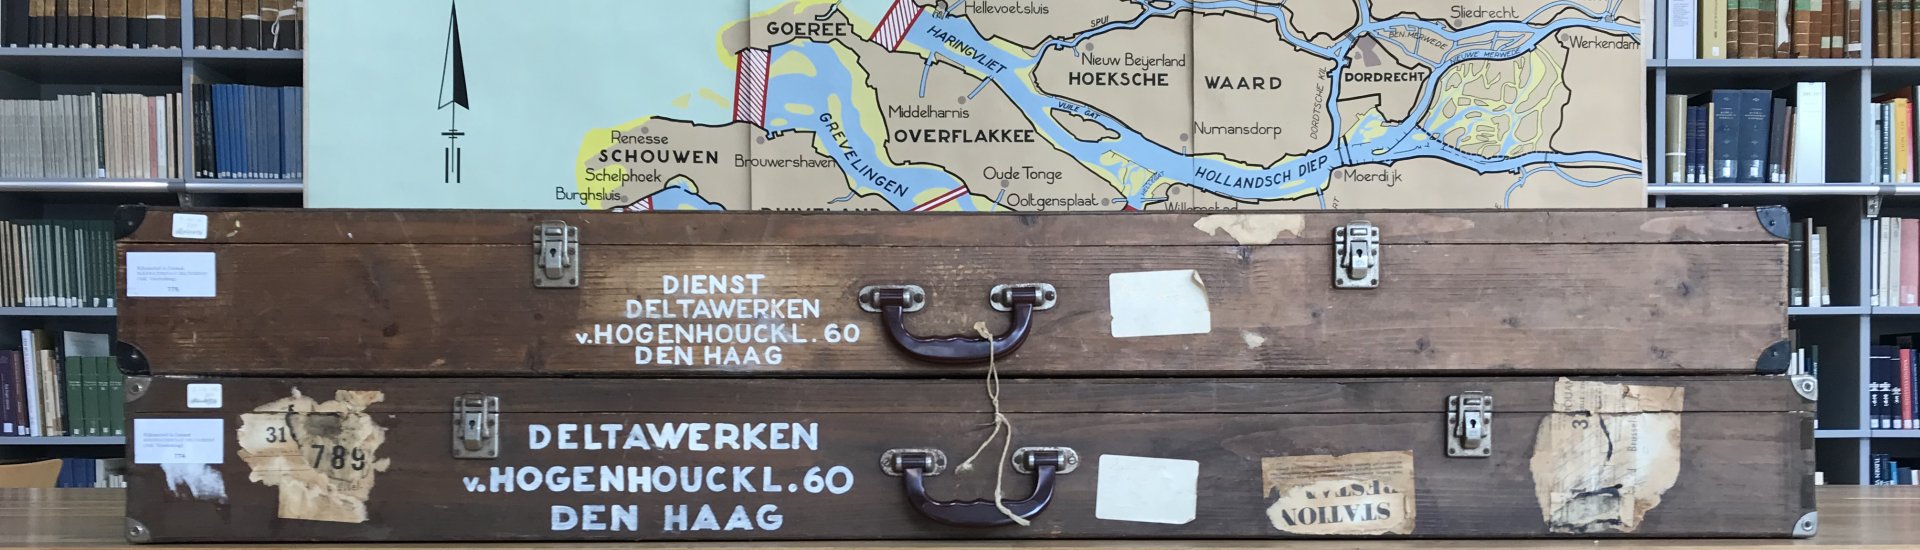 Reiskoffers van de kaart waarop de Deltaplannen werden getoond. 